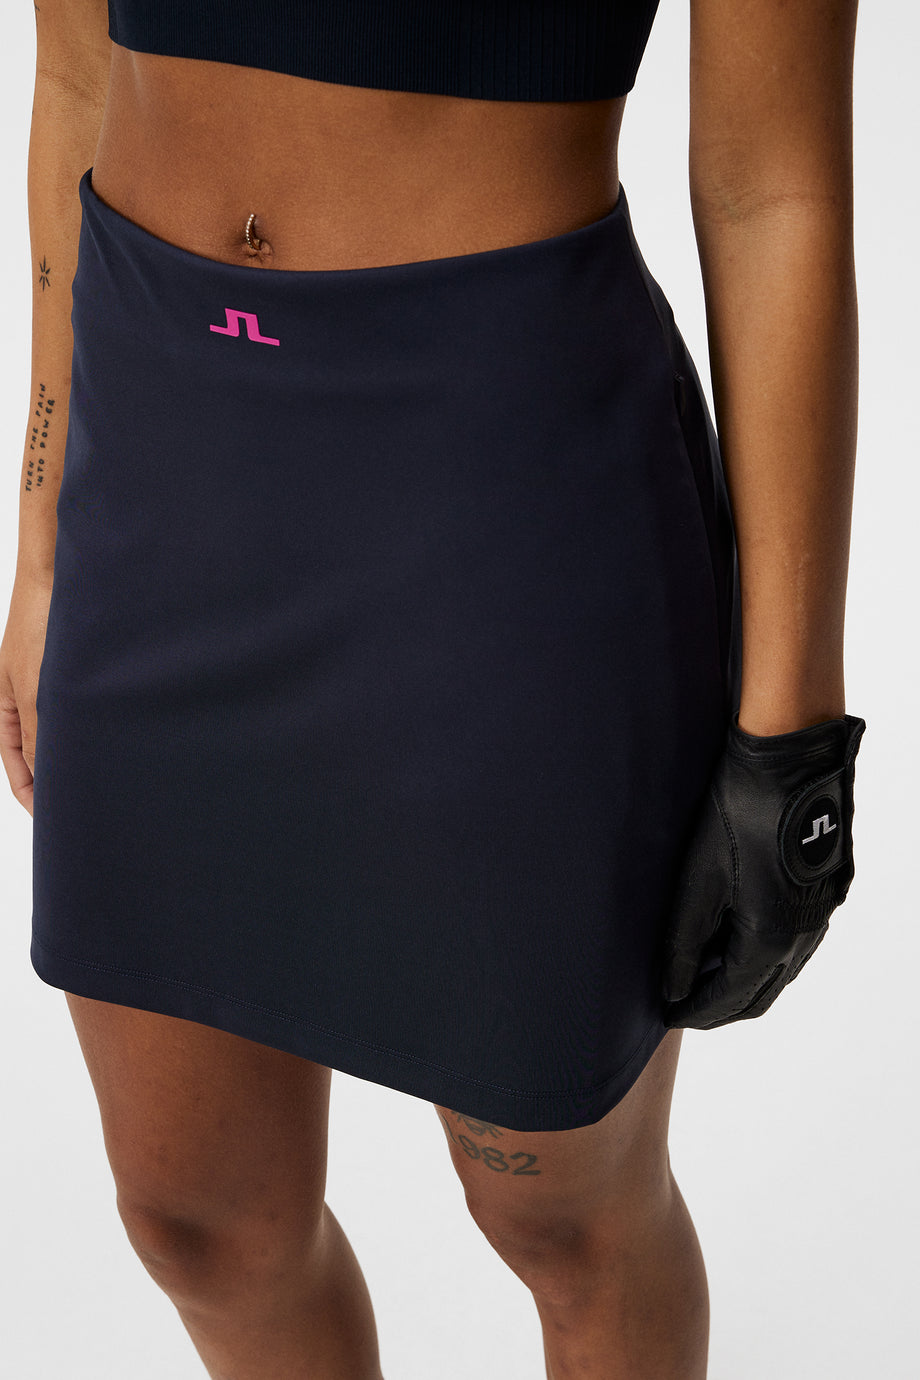 Raphaela Mid Skirt / JL Navy